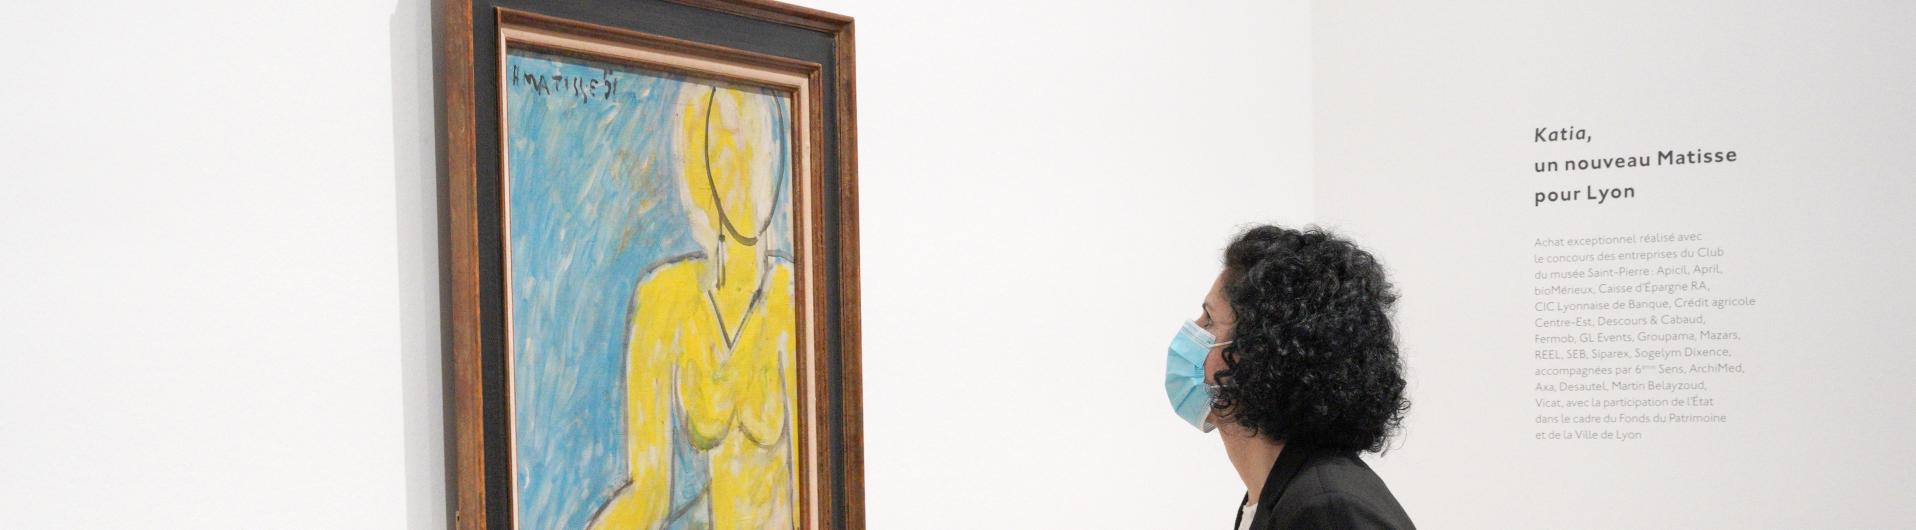 Katia à la chemise jaune, Henri Matisse, 1951© Succession H. Matisse, 2021. Image © Lyon MBA - Photo Stéphane Degroisse